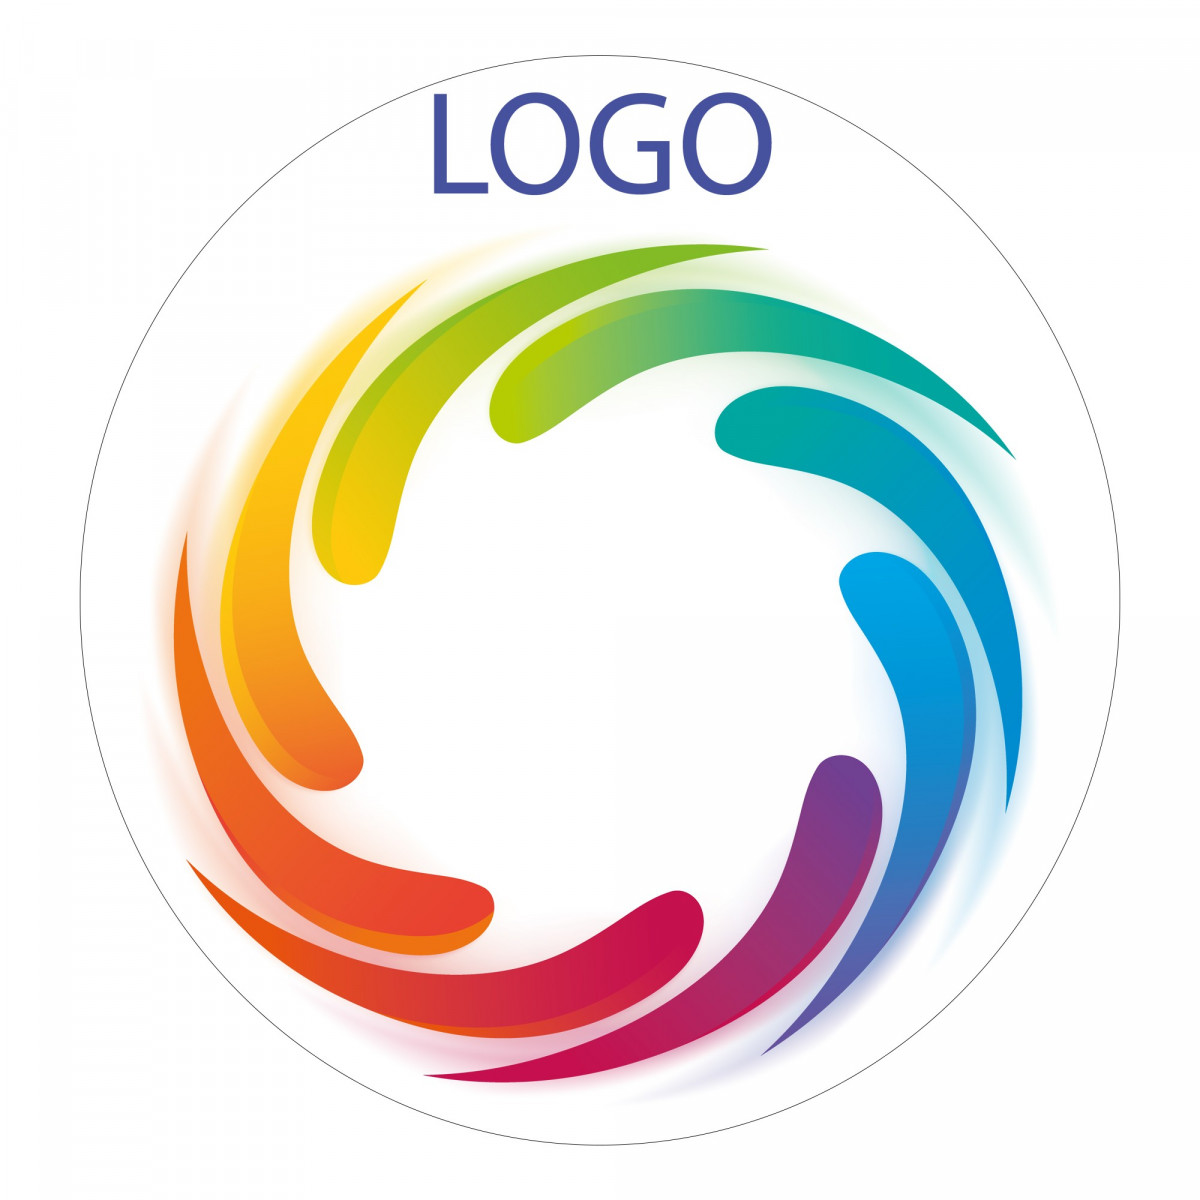 Adesivos para logotipos de empresas